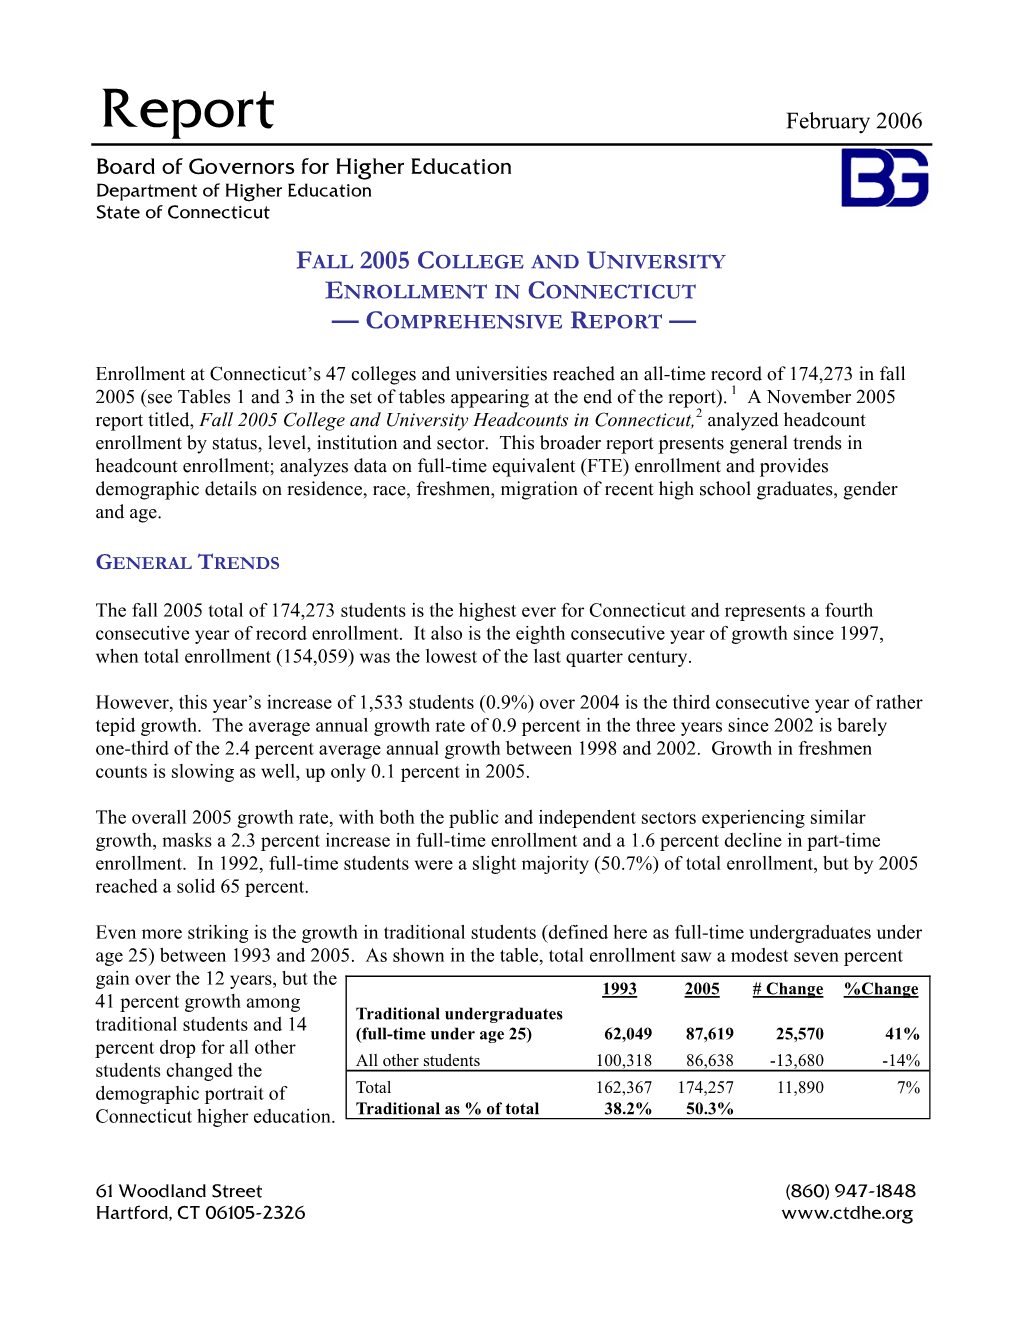 Fall 2005 Comprehensive Enrollment Report.Pub